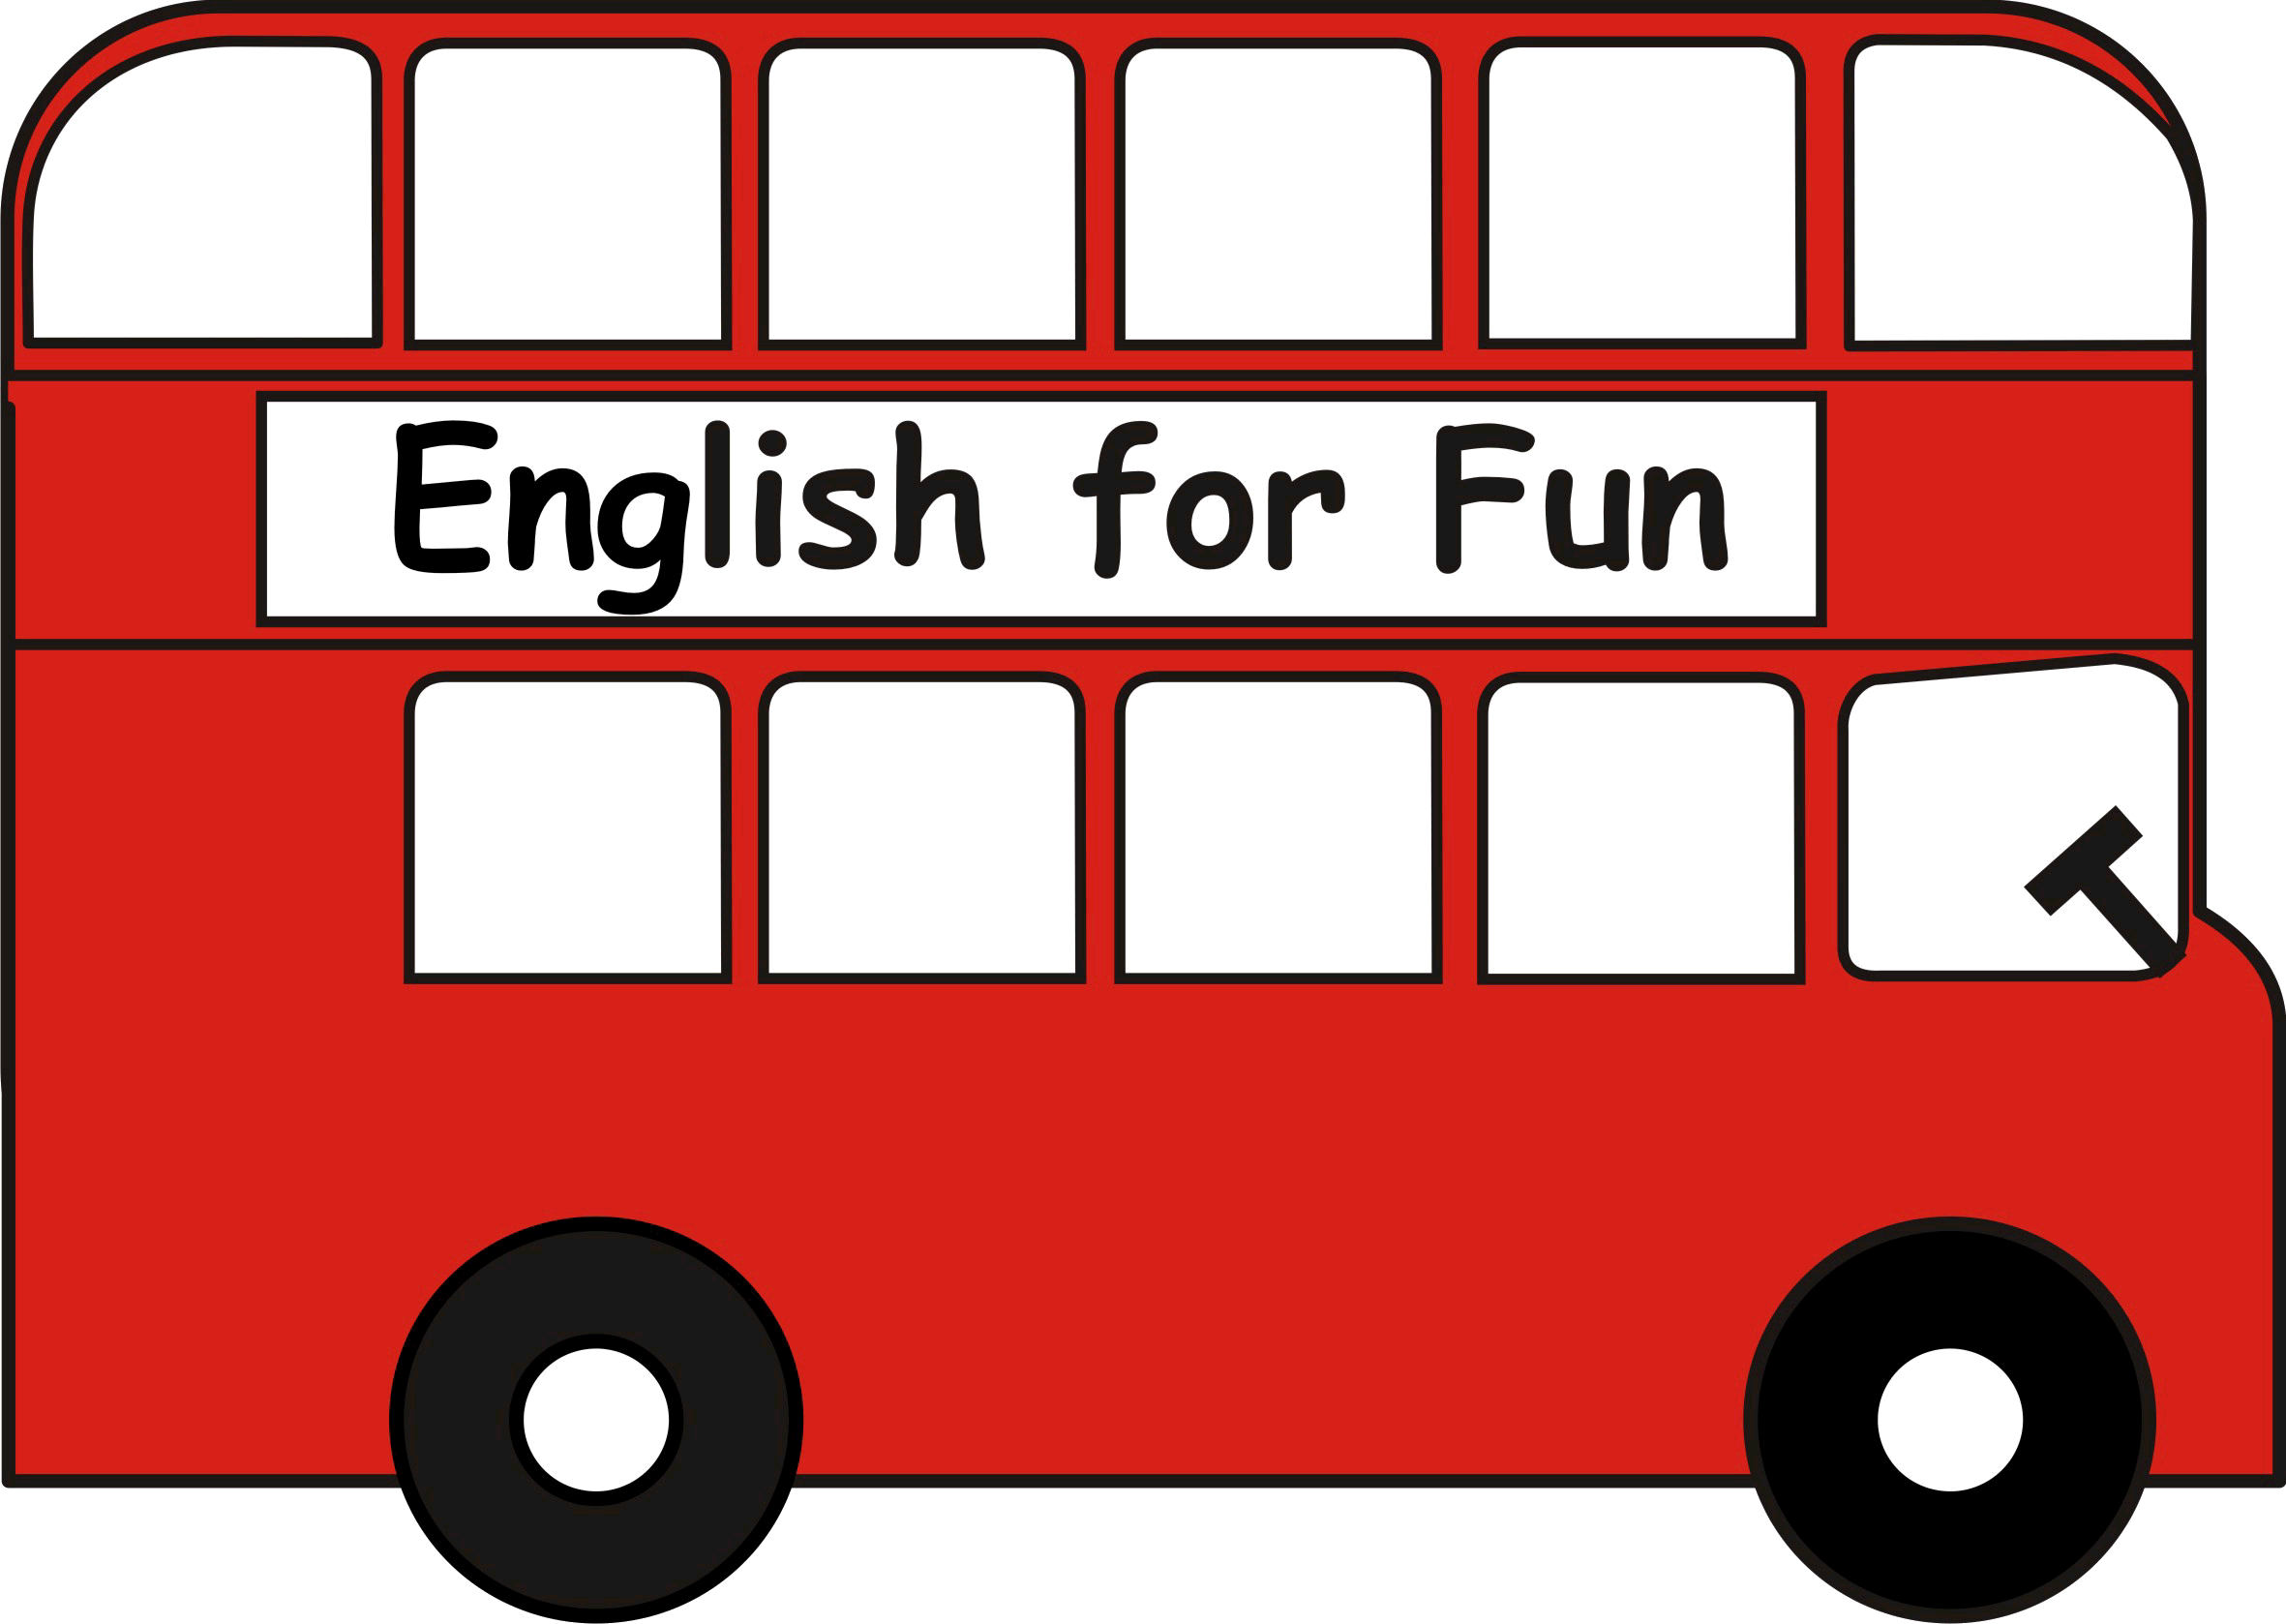 English for fun. English is fun. English is fun картинки. Английский язык иконка. Fun is where you are